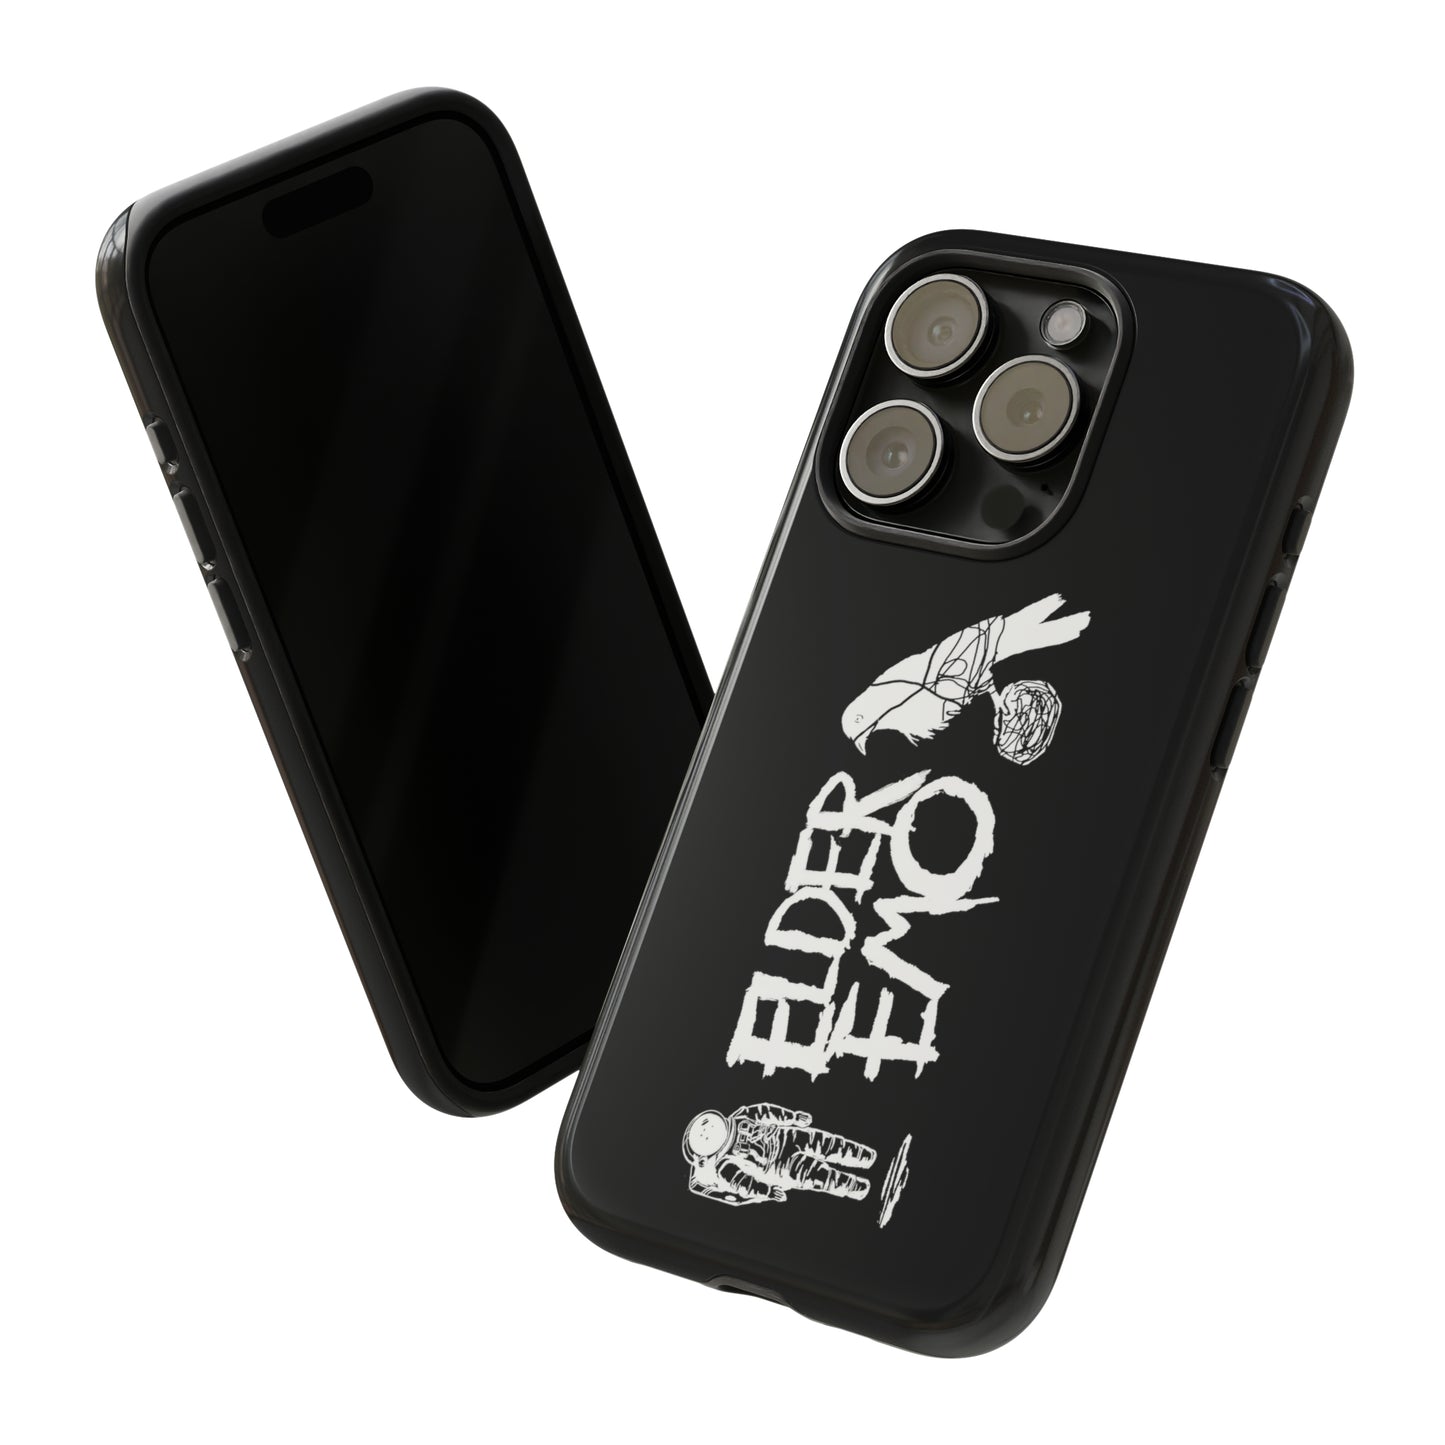 Elder Emo phone cases